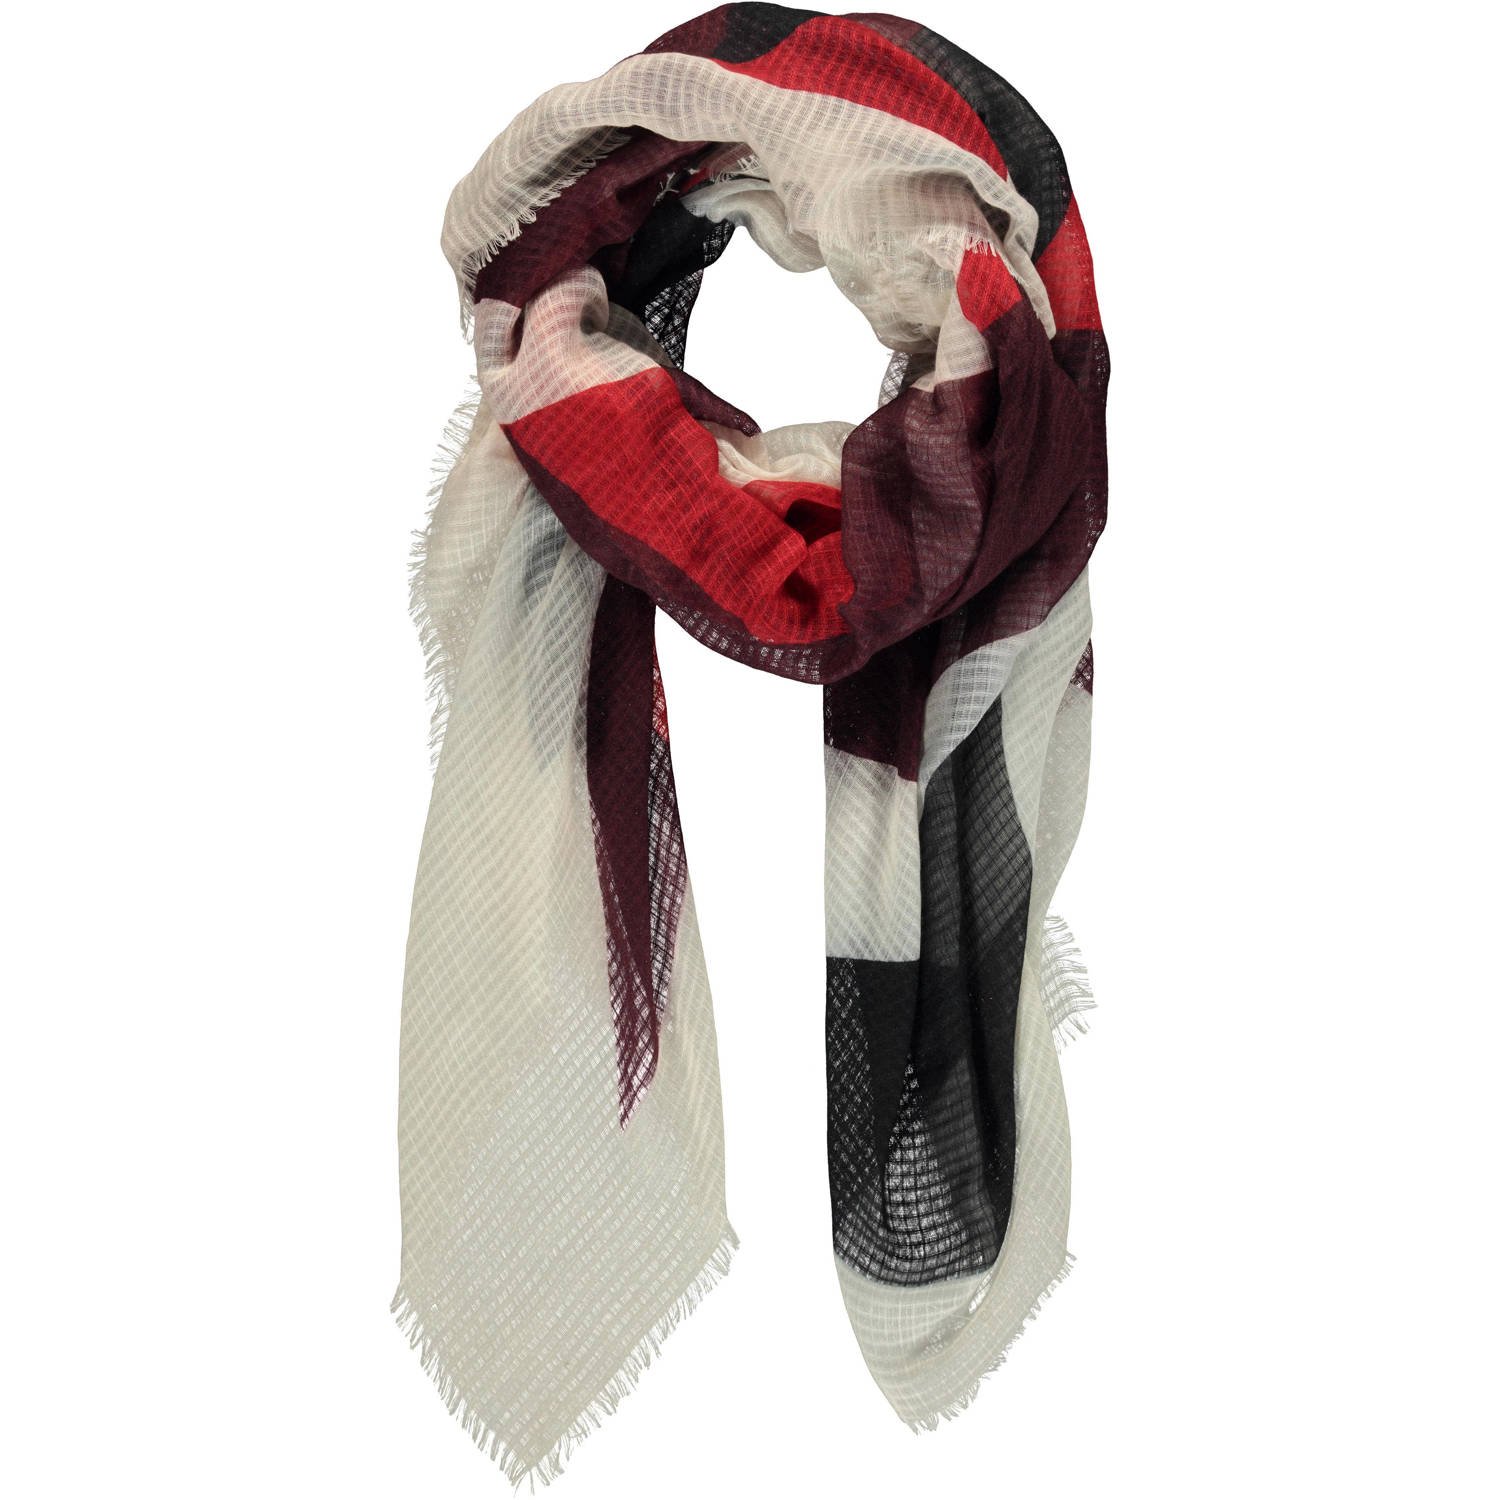 Expresso sjaal rood beige zwart